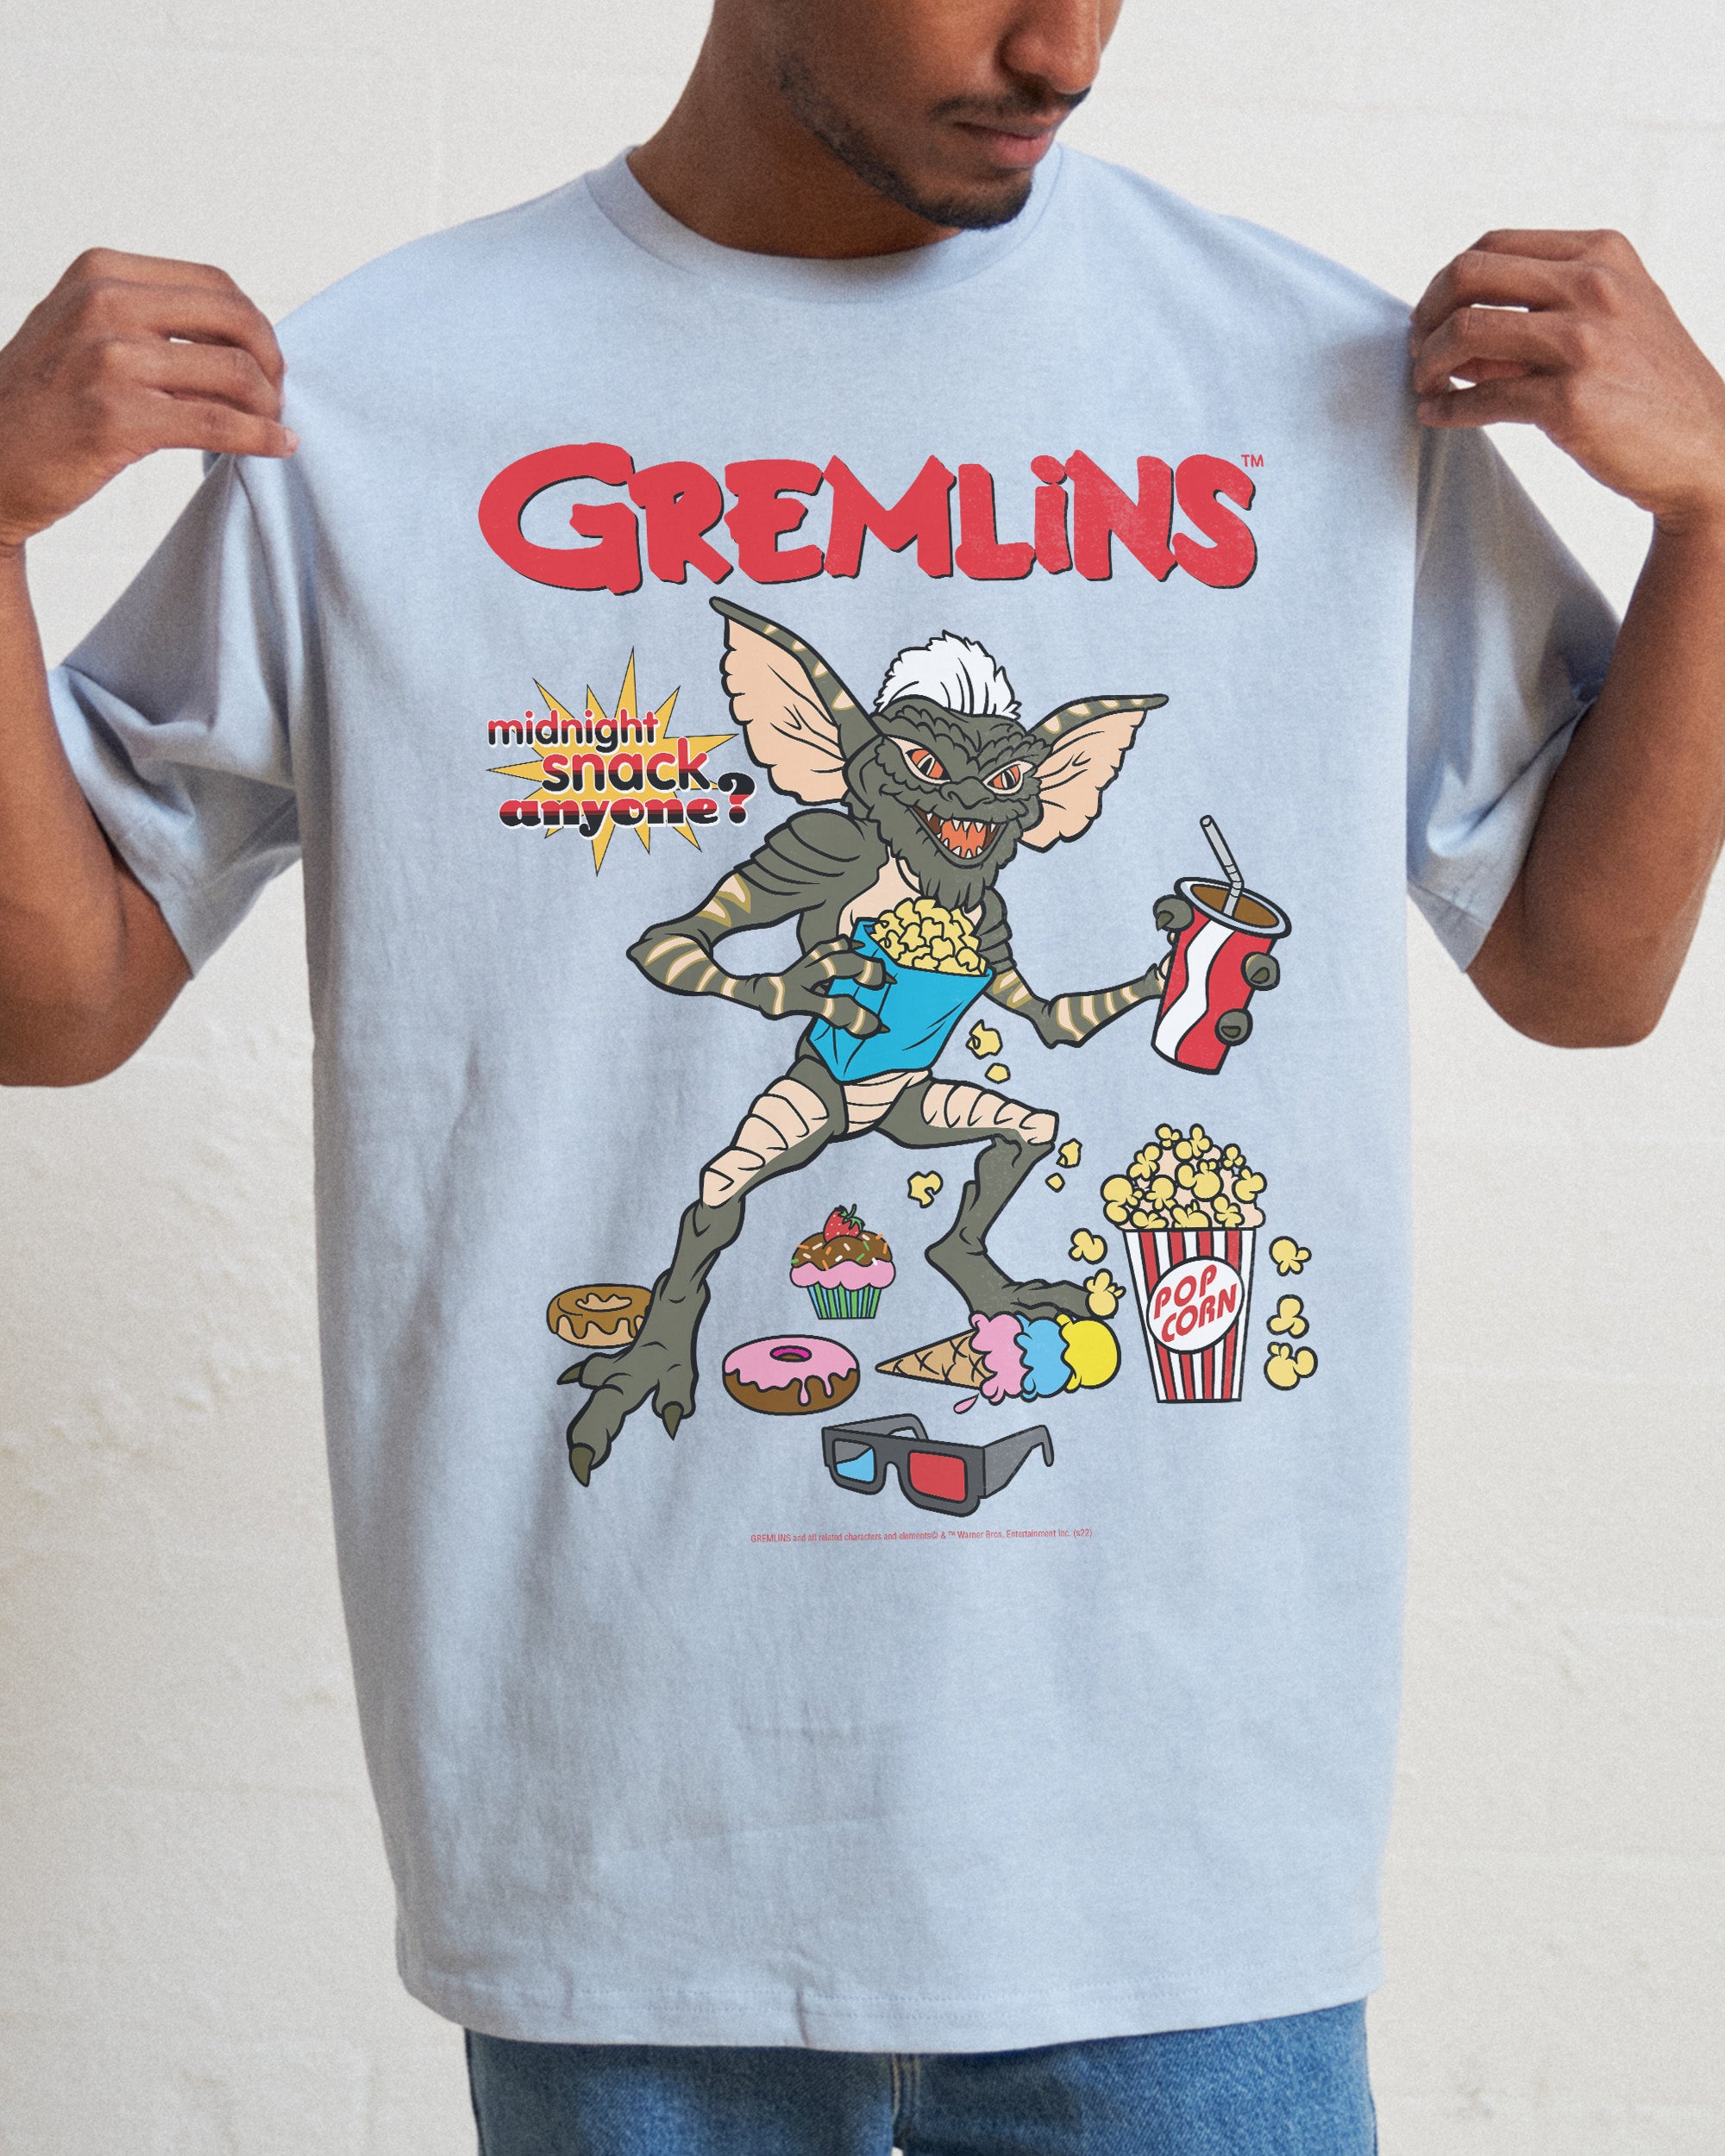 Gremlins Midnight Snack T-Shirt